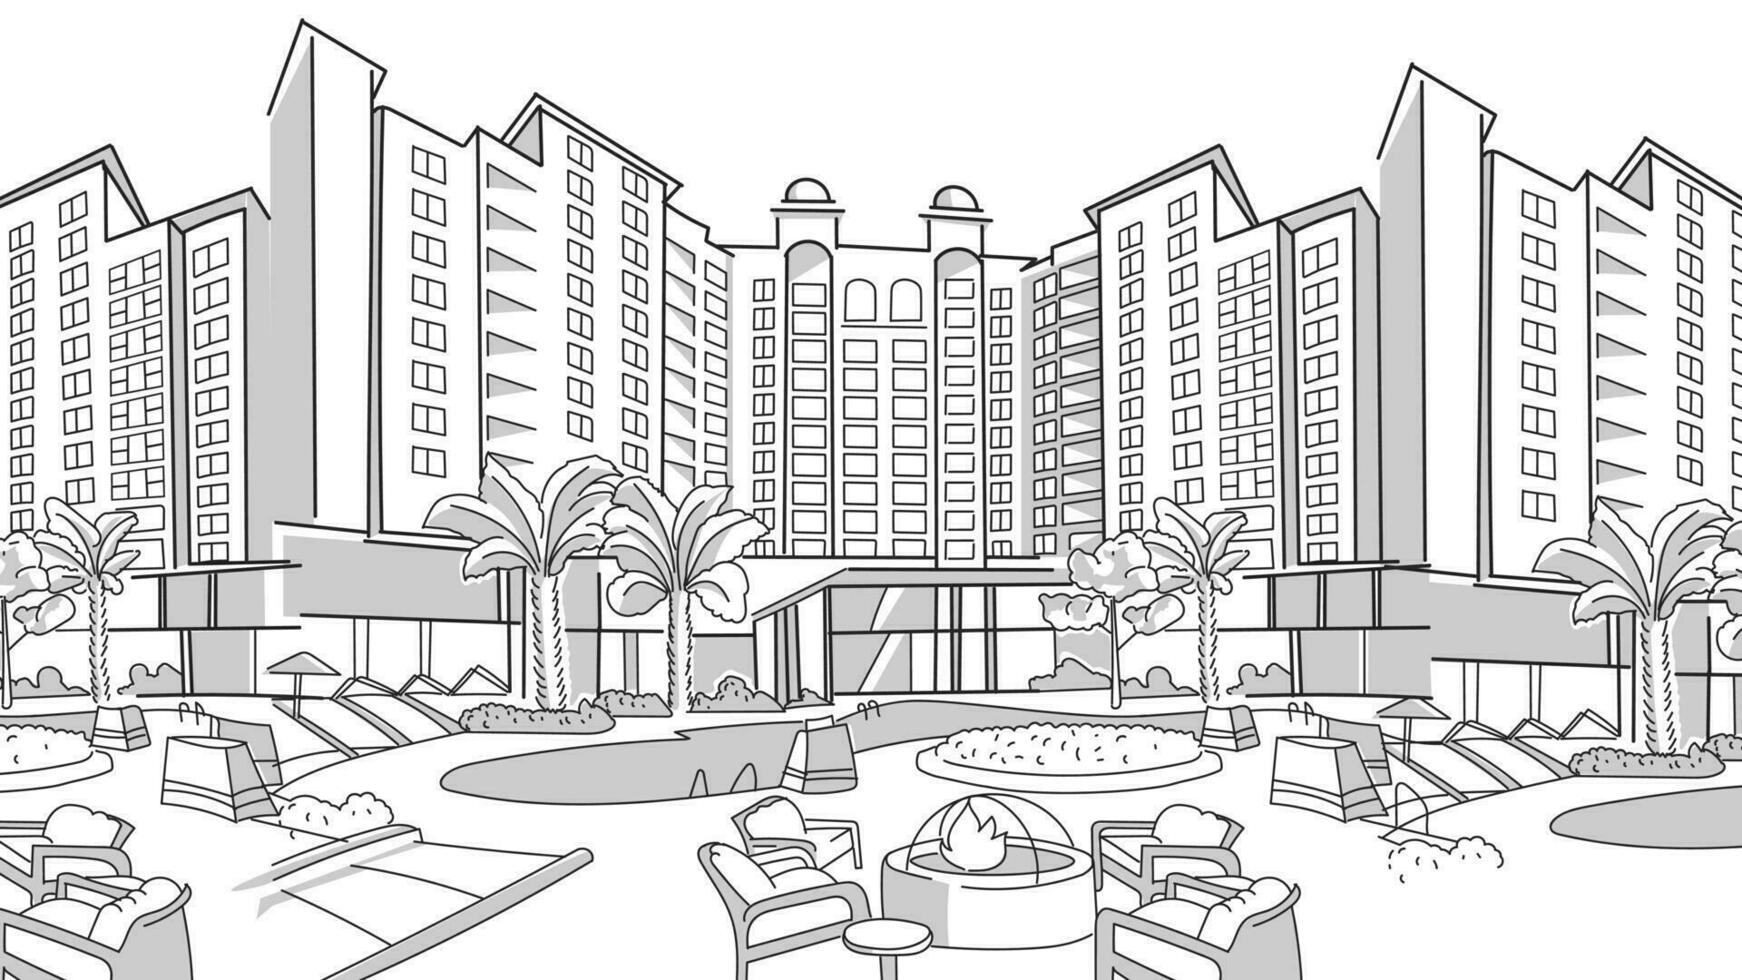 draussen Strand Wohn Hotel, Resort mit Palme Bäume, Tisch, Stuhl, Schwimmbad, minimal realistisch Stil Vektor Illustration